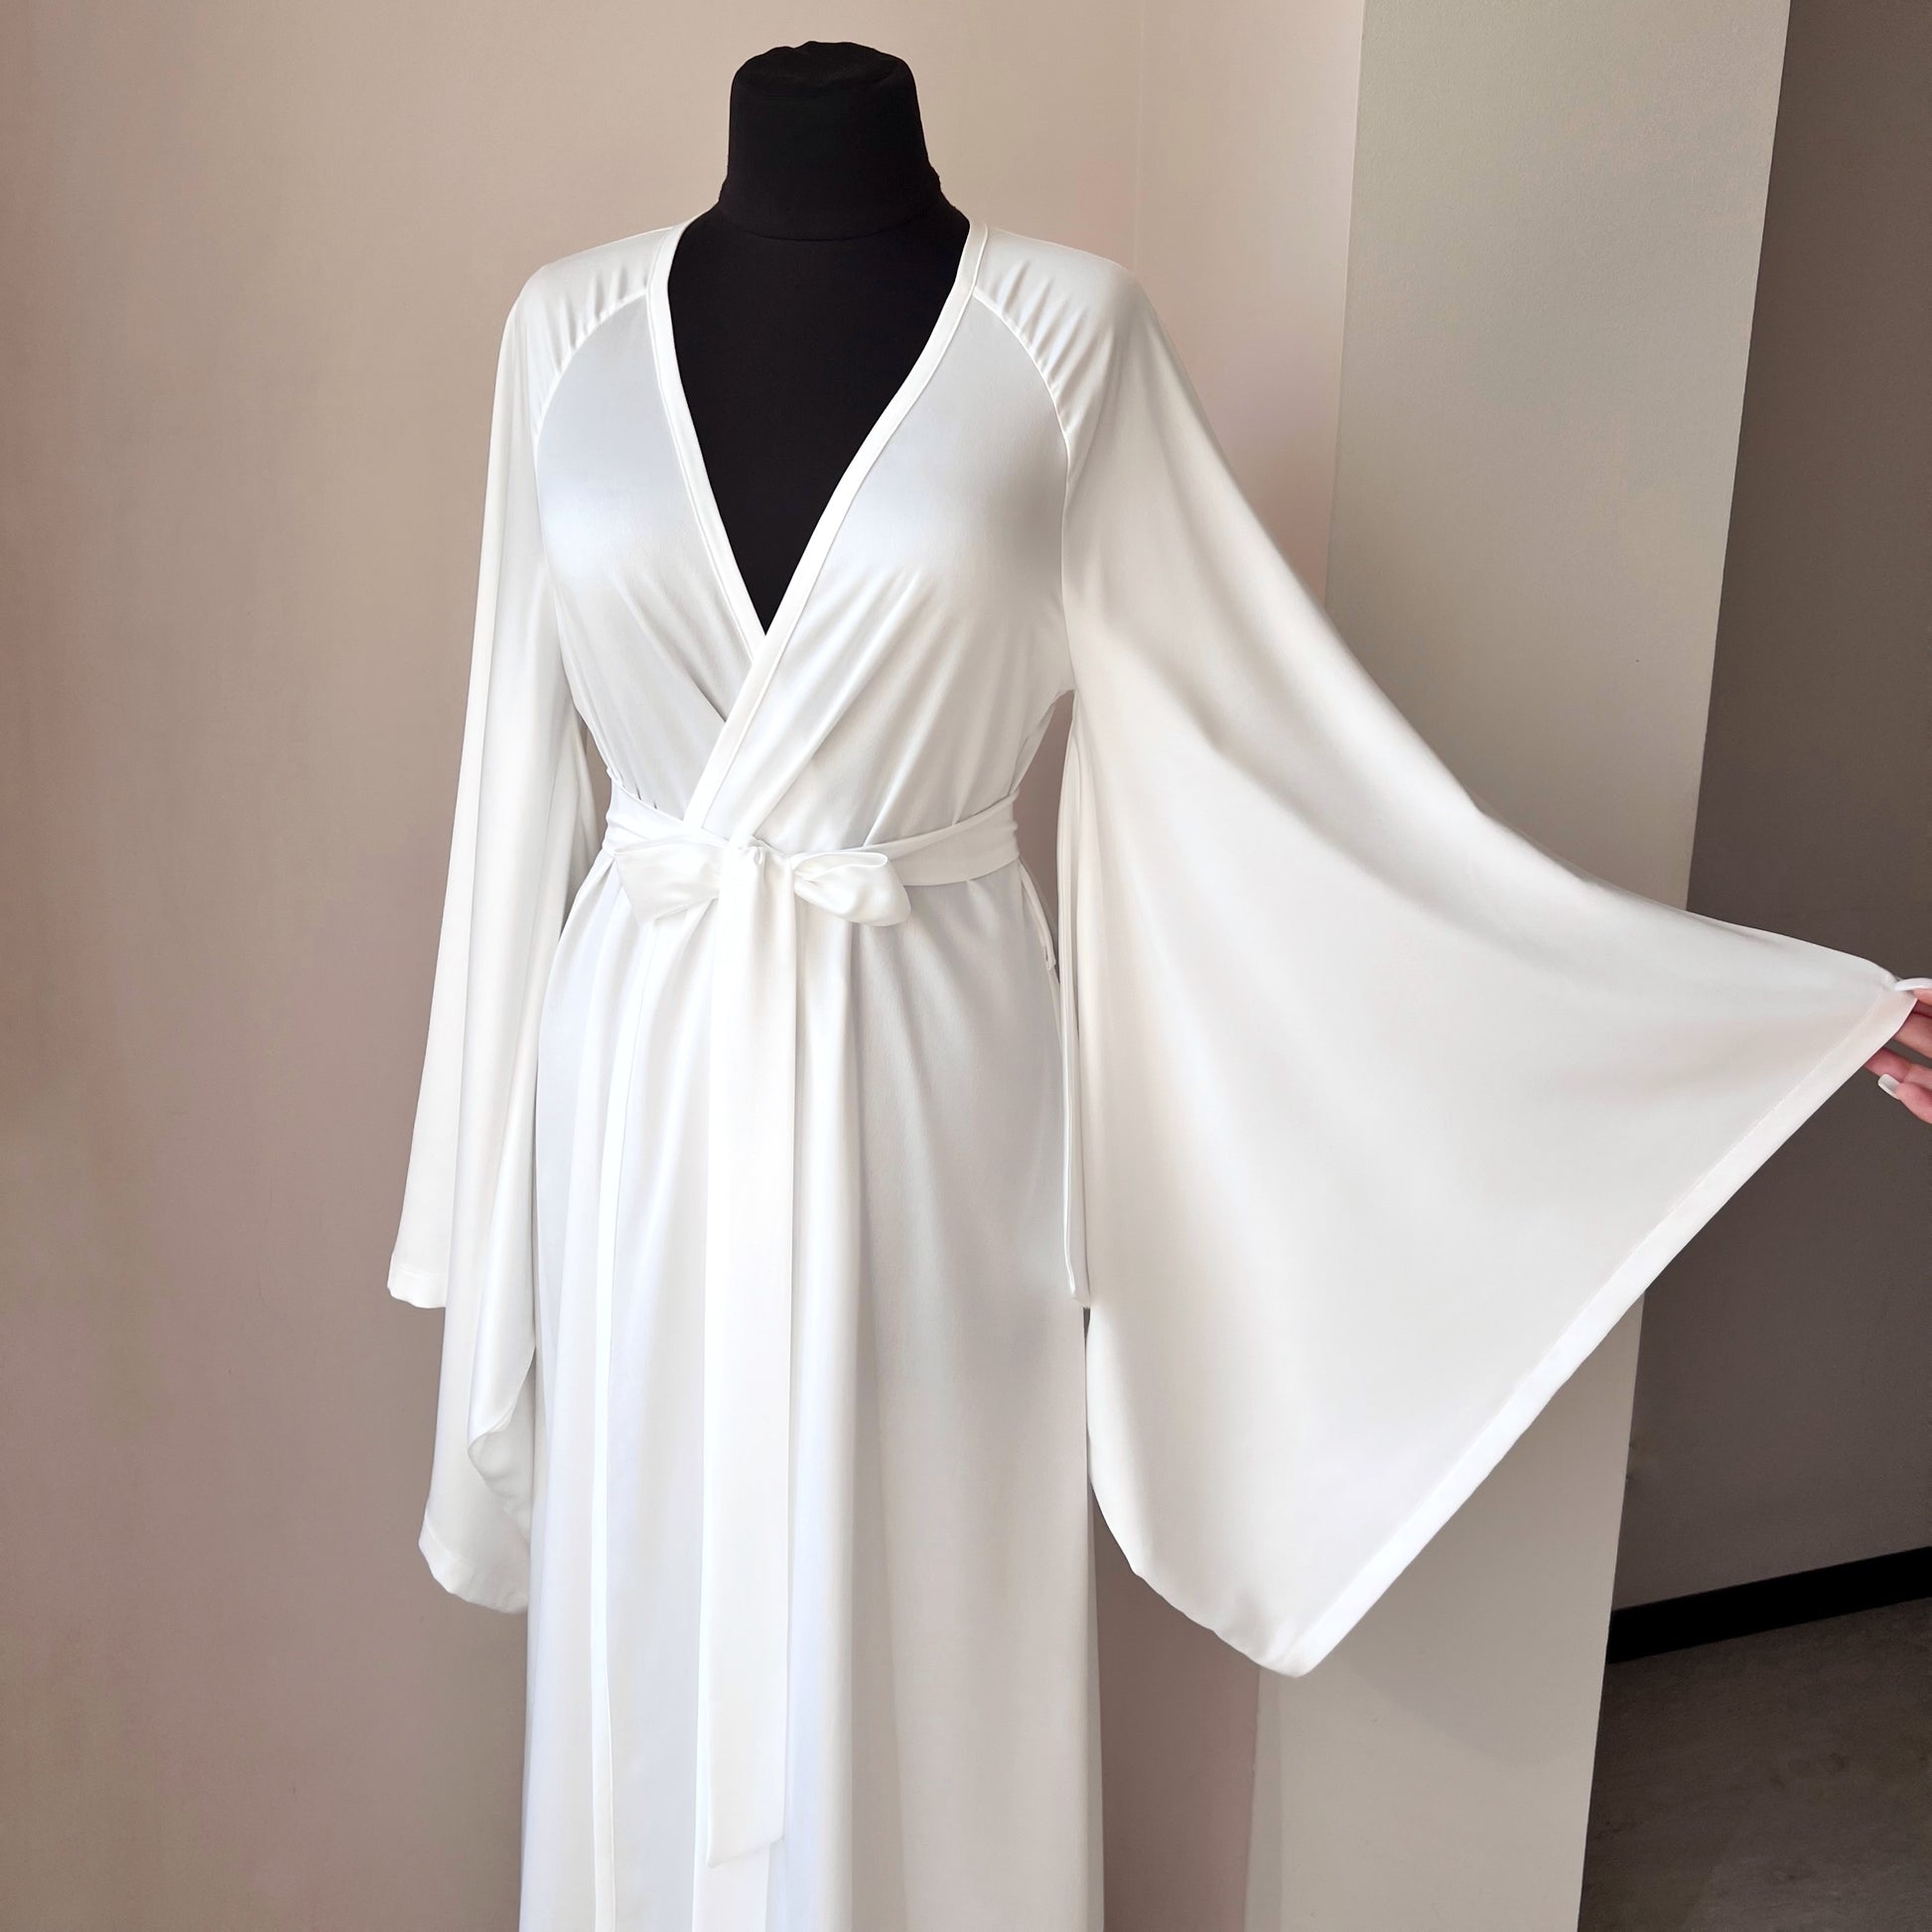 Kimono robe bride